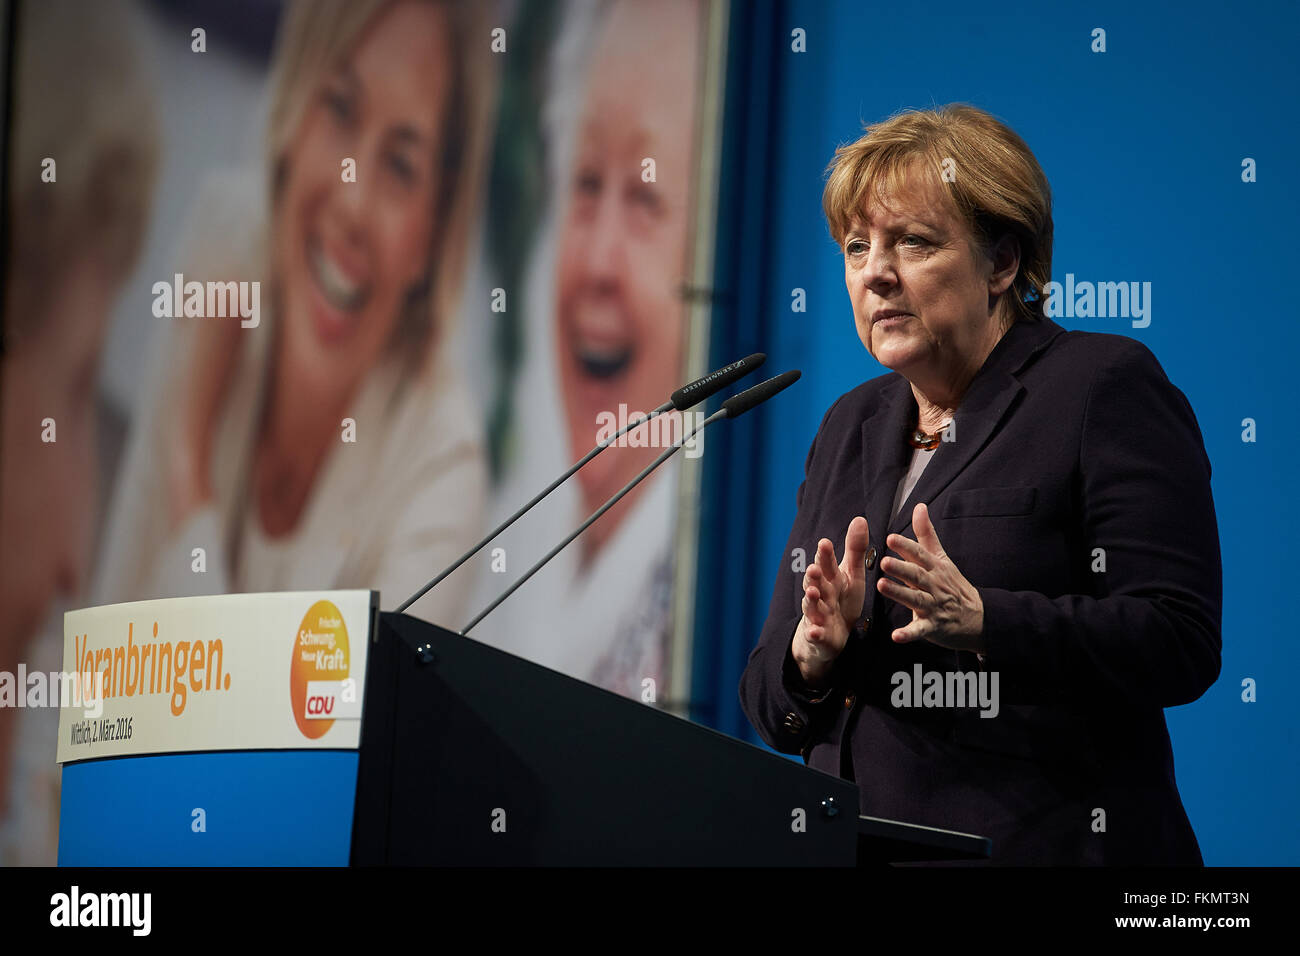 La chancelière Angela Merkel lors d'une campagne sur l'apparence 02.03.2016, Wittlich, Rhénanie-Palatinat, Allemagne Banque D'Images